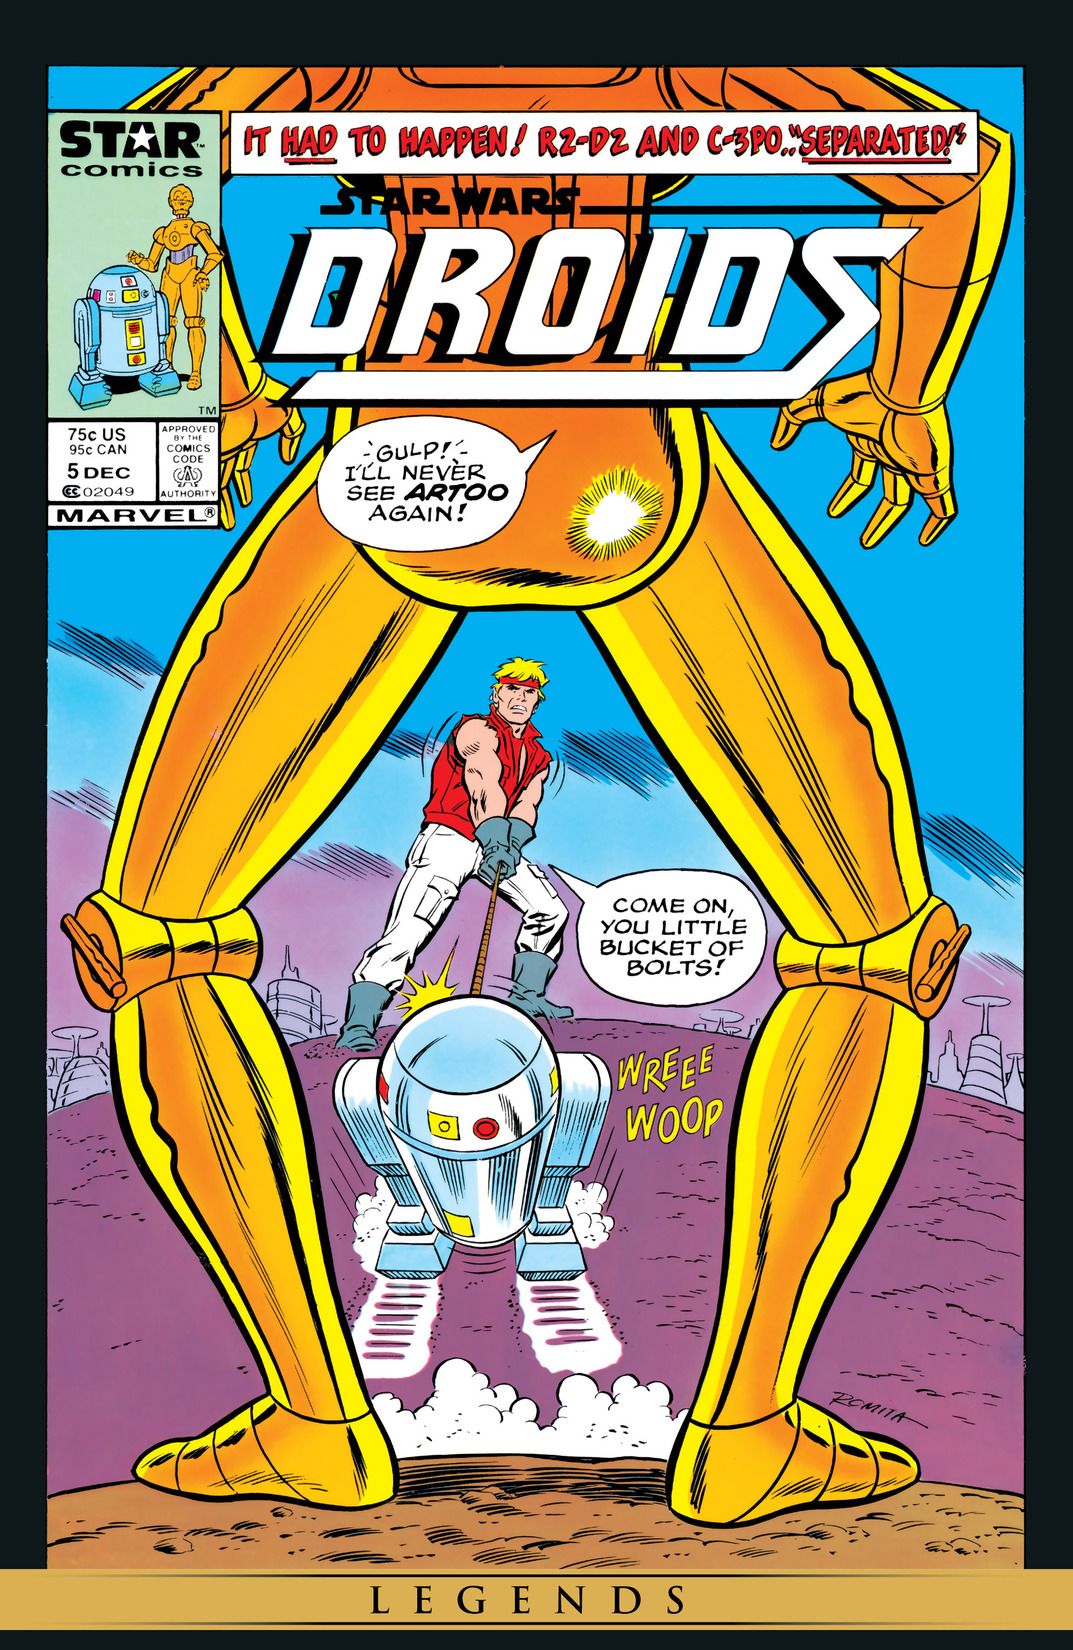 Star Wars: Droids (1986) #5